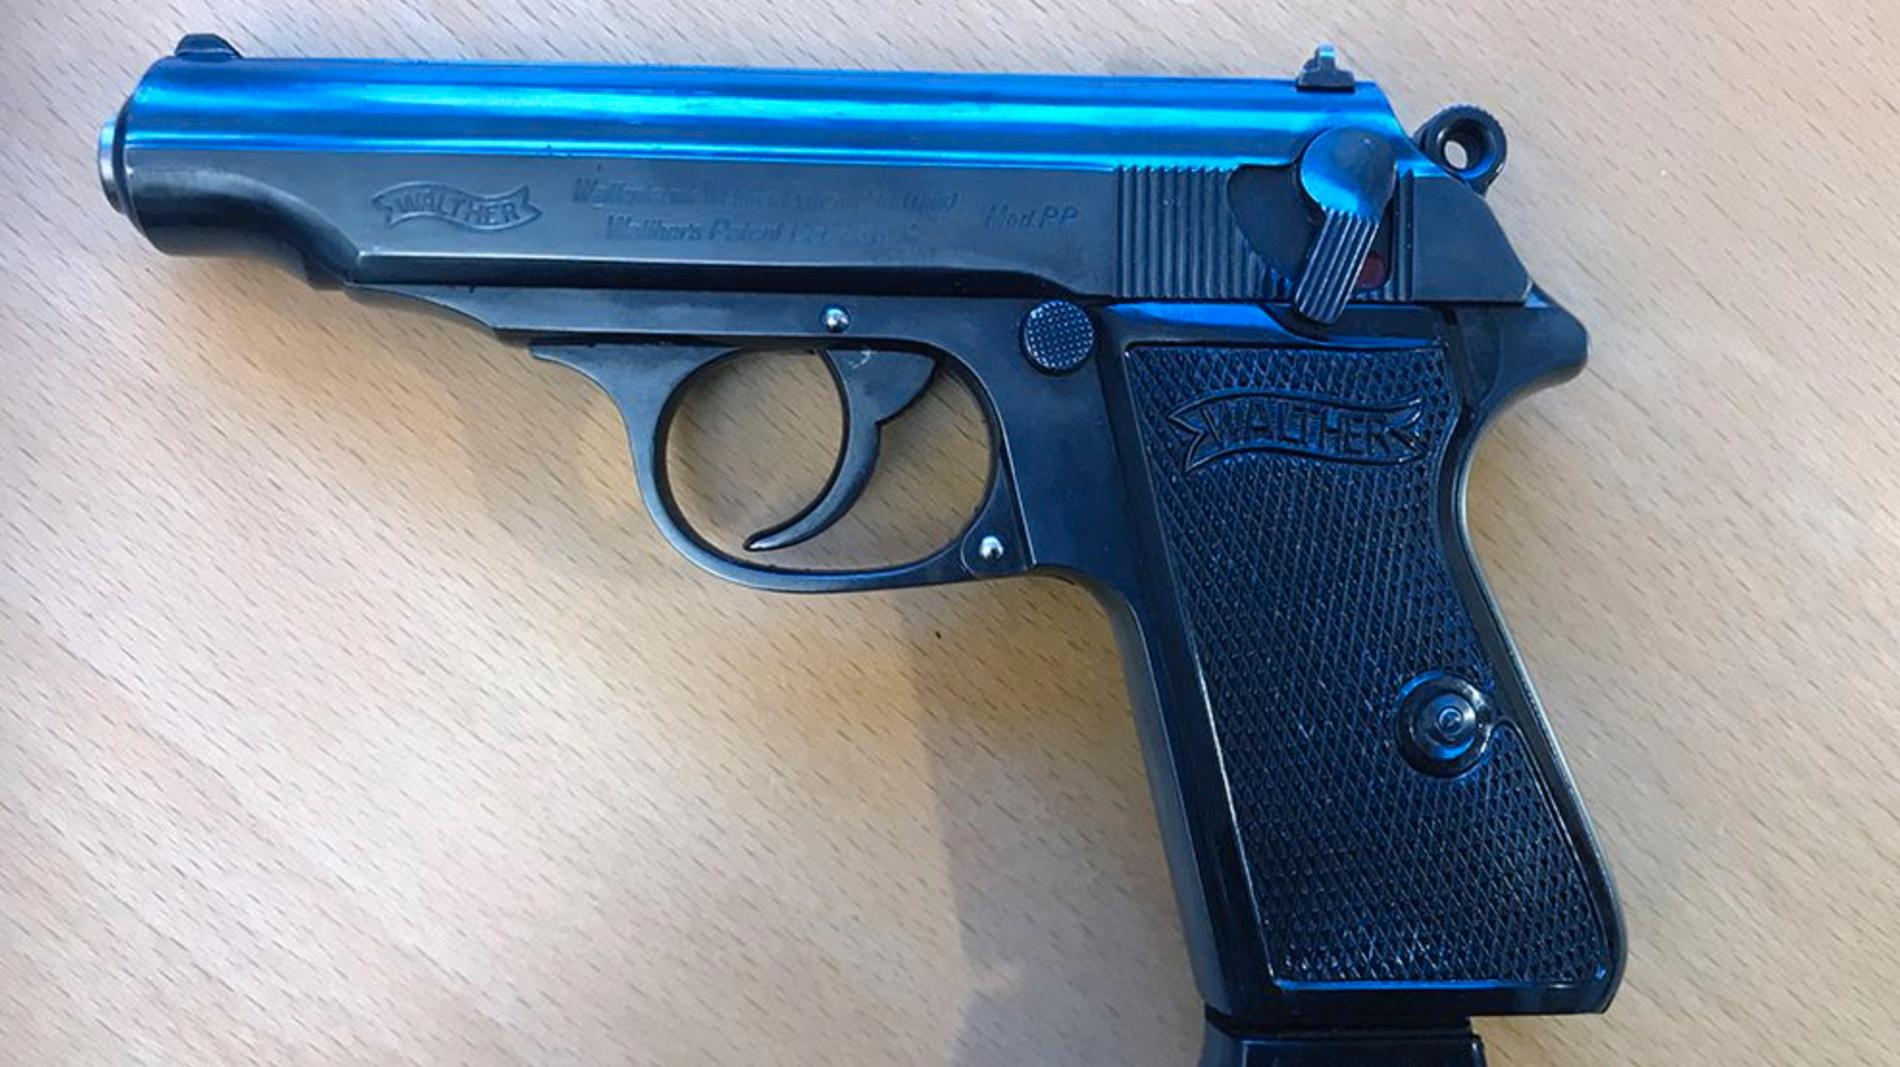 Bland annat hittades en Walther PPK hemma hos mannen, pistolen som tidigare var polisens tjänstevapen.